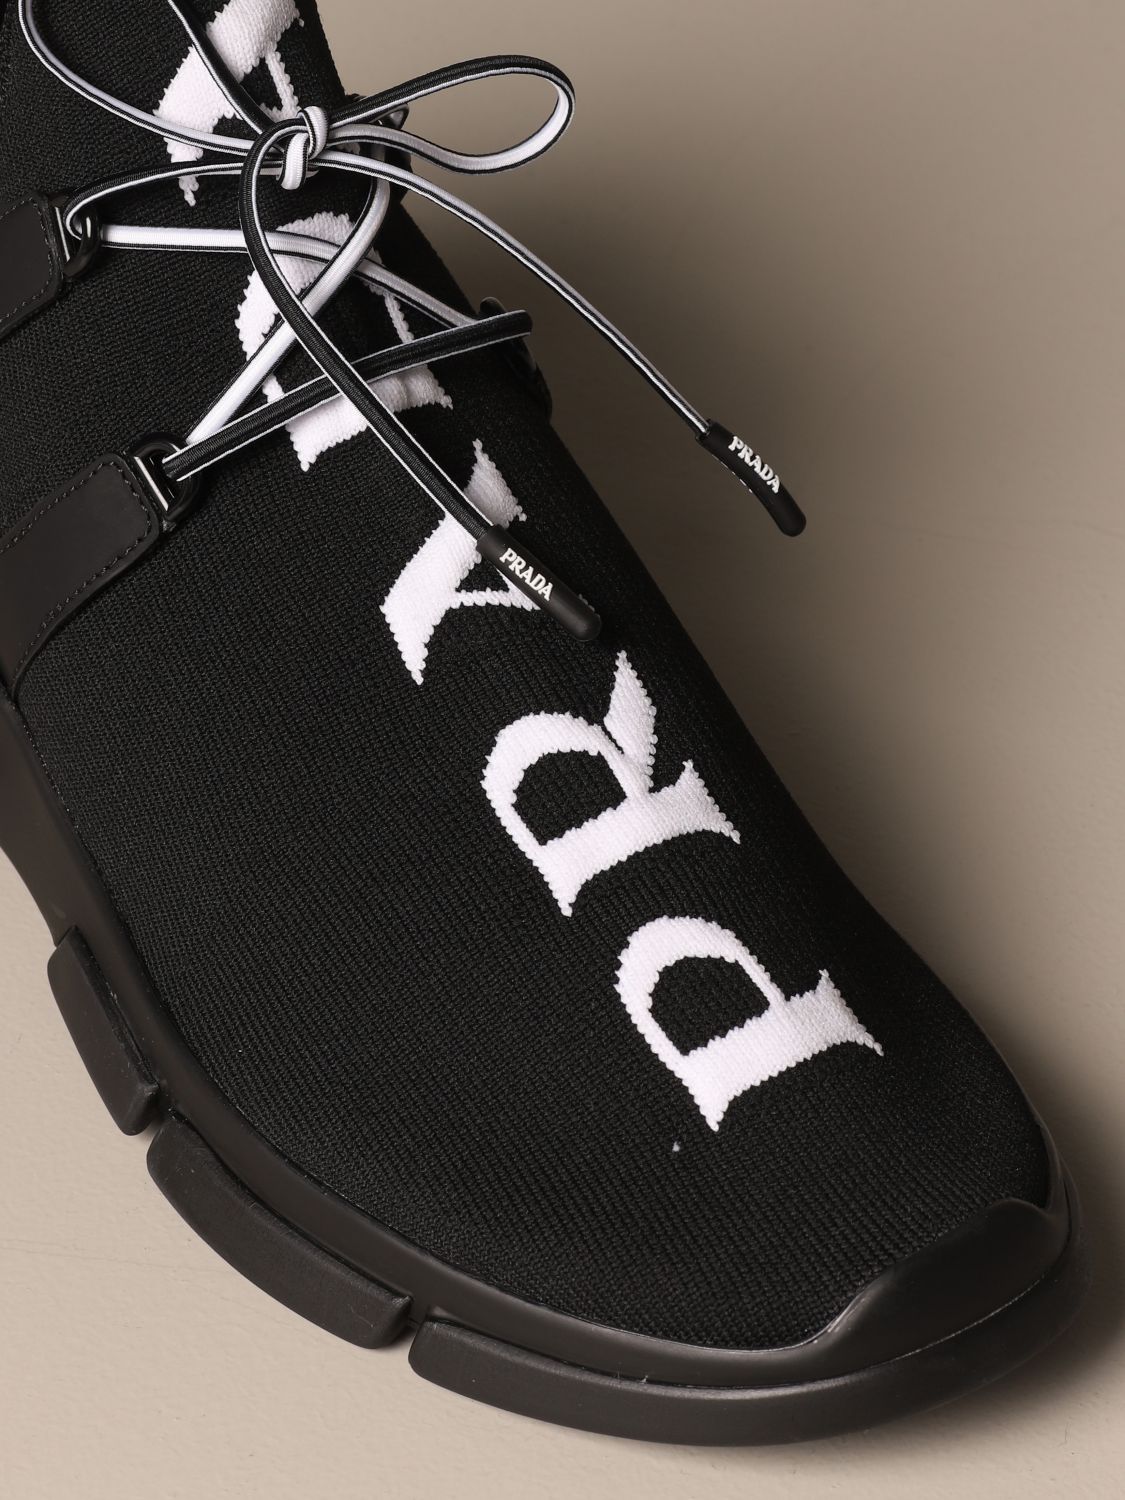 PRADA: sneakers in knit fabric with logo - Black | Prada sneakers